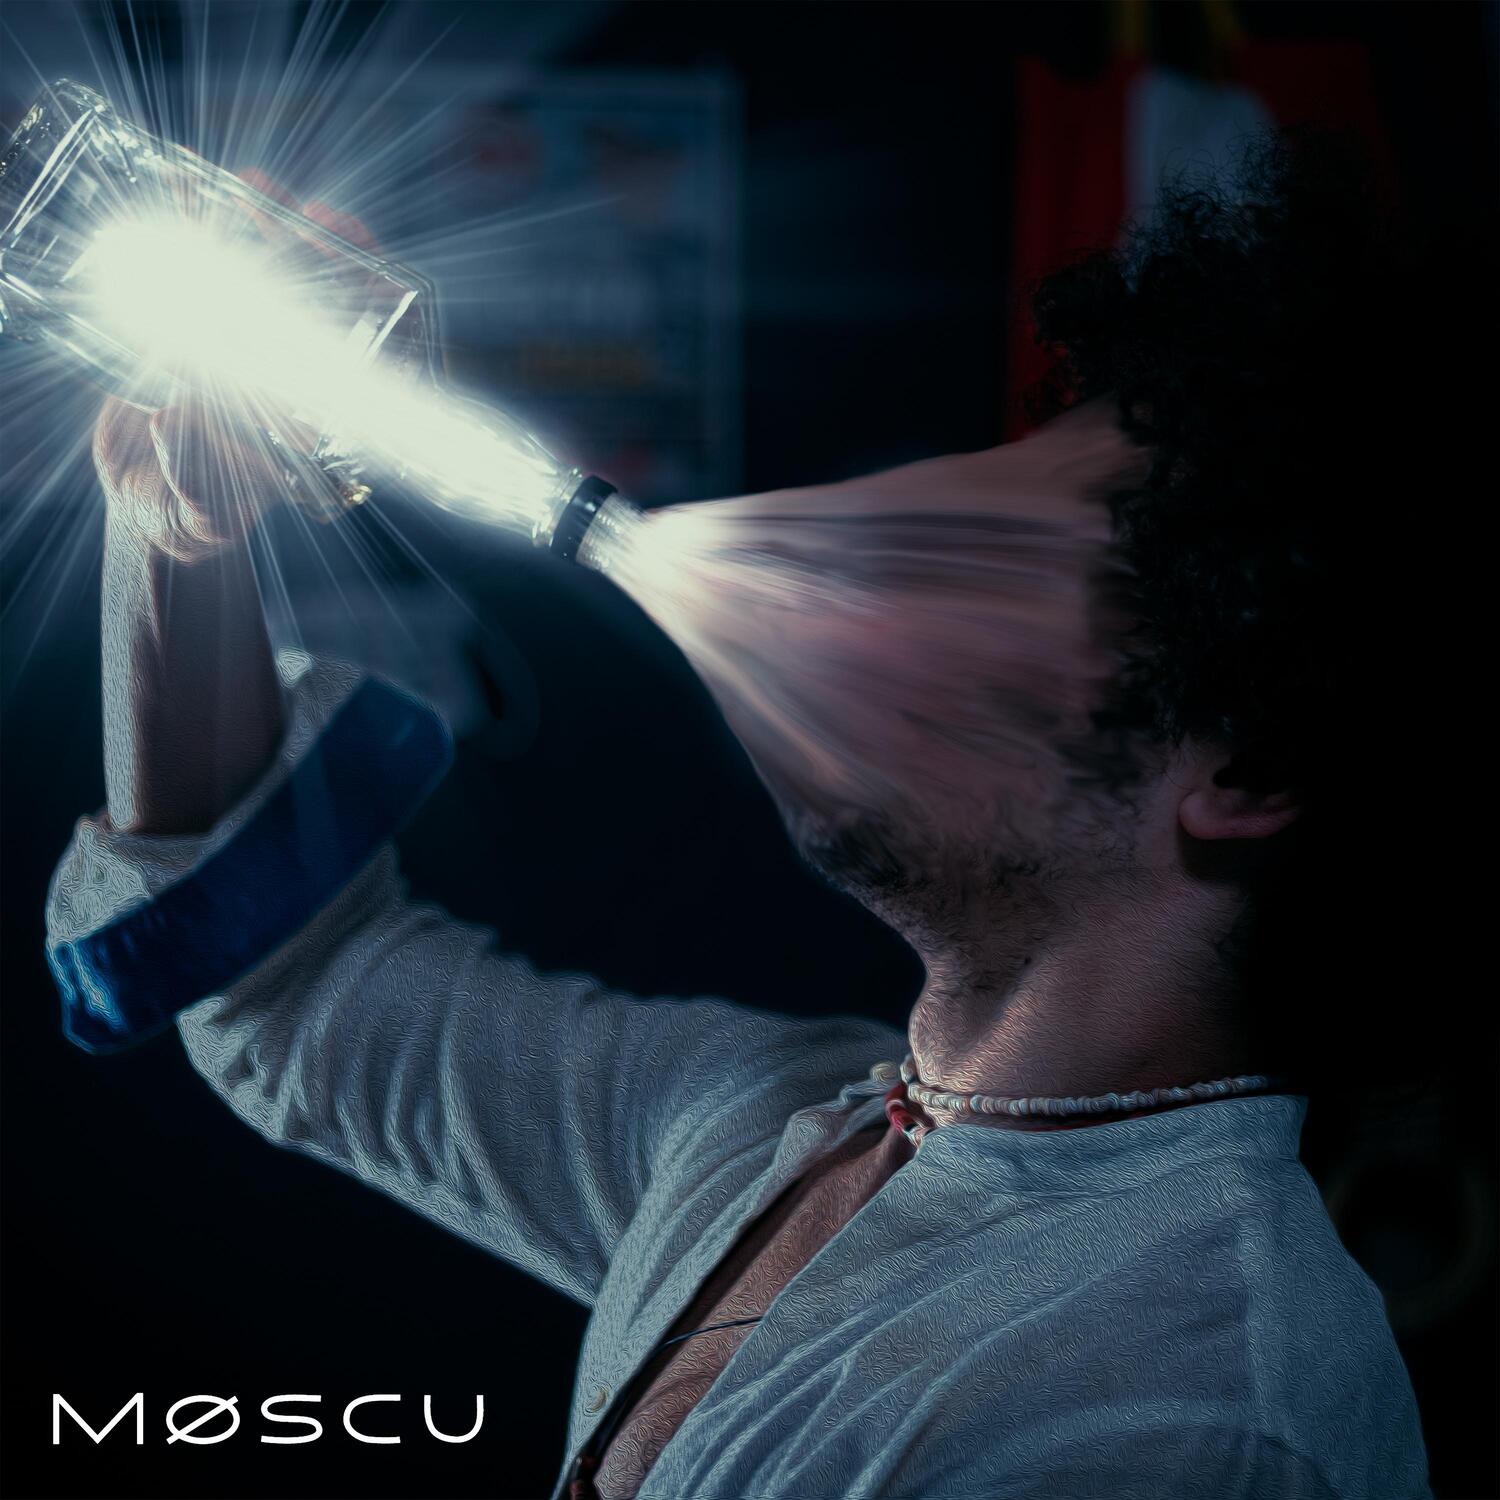 Møscu lanza su primer sencillo «Montañas»